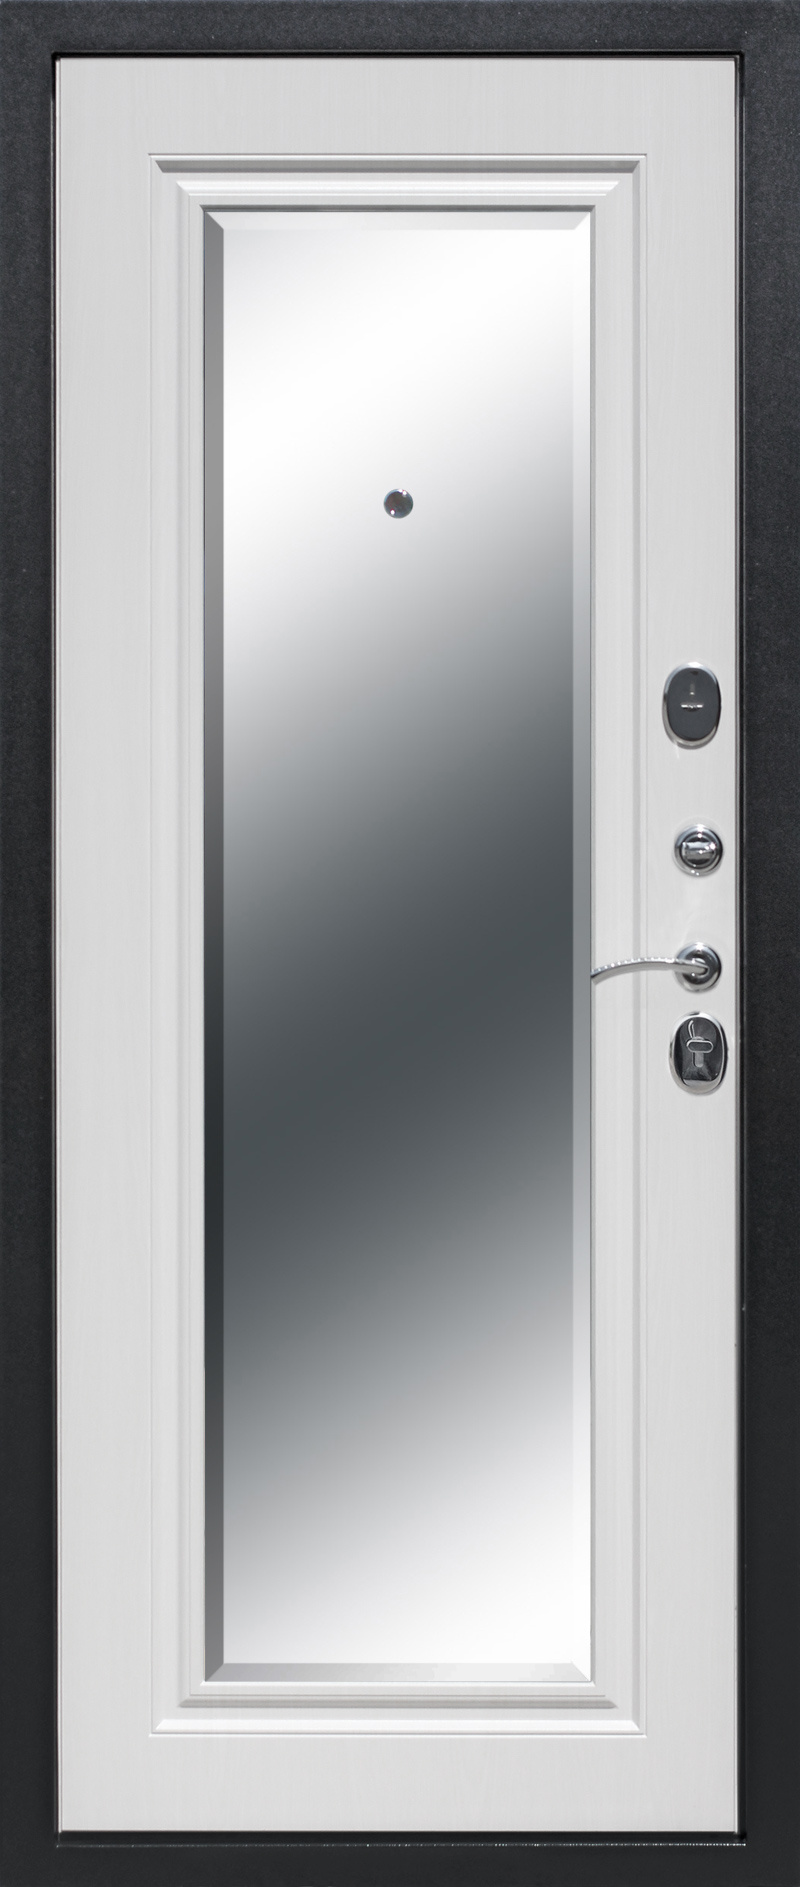 Феррони Входная дверь 7,5 см Гарда серебро зеркало фацет, арт. 0000604 - фото №1